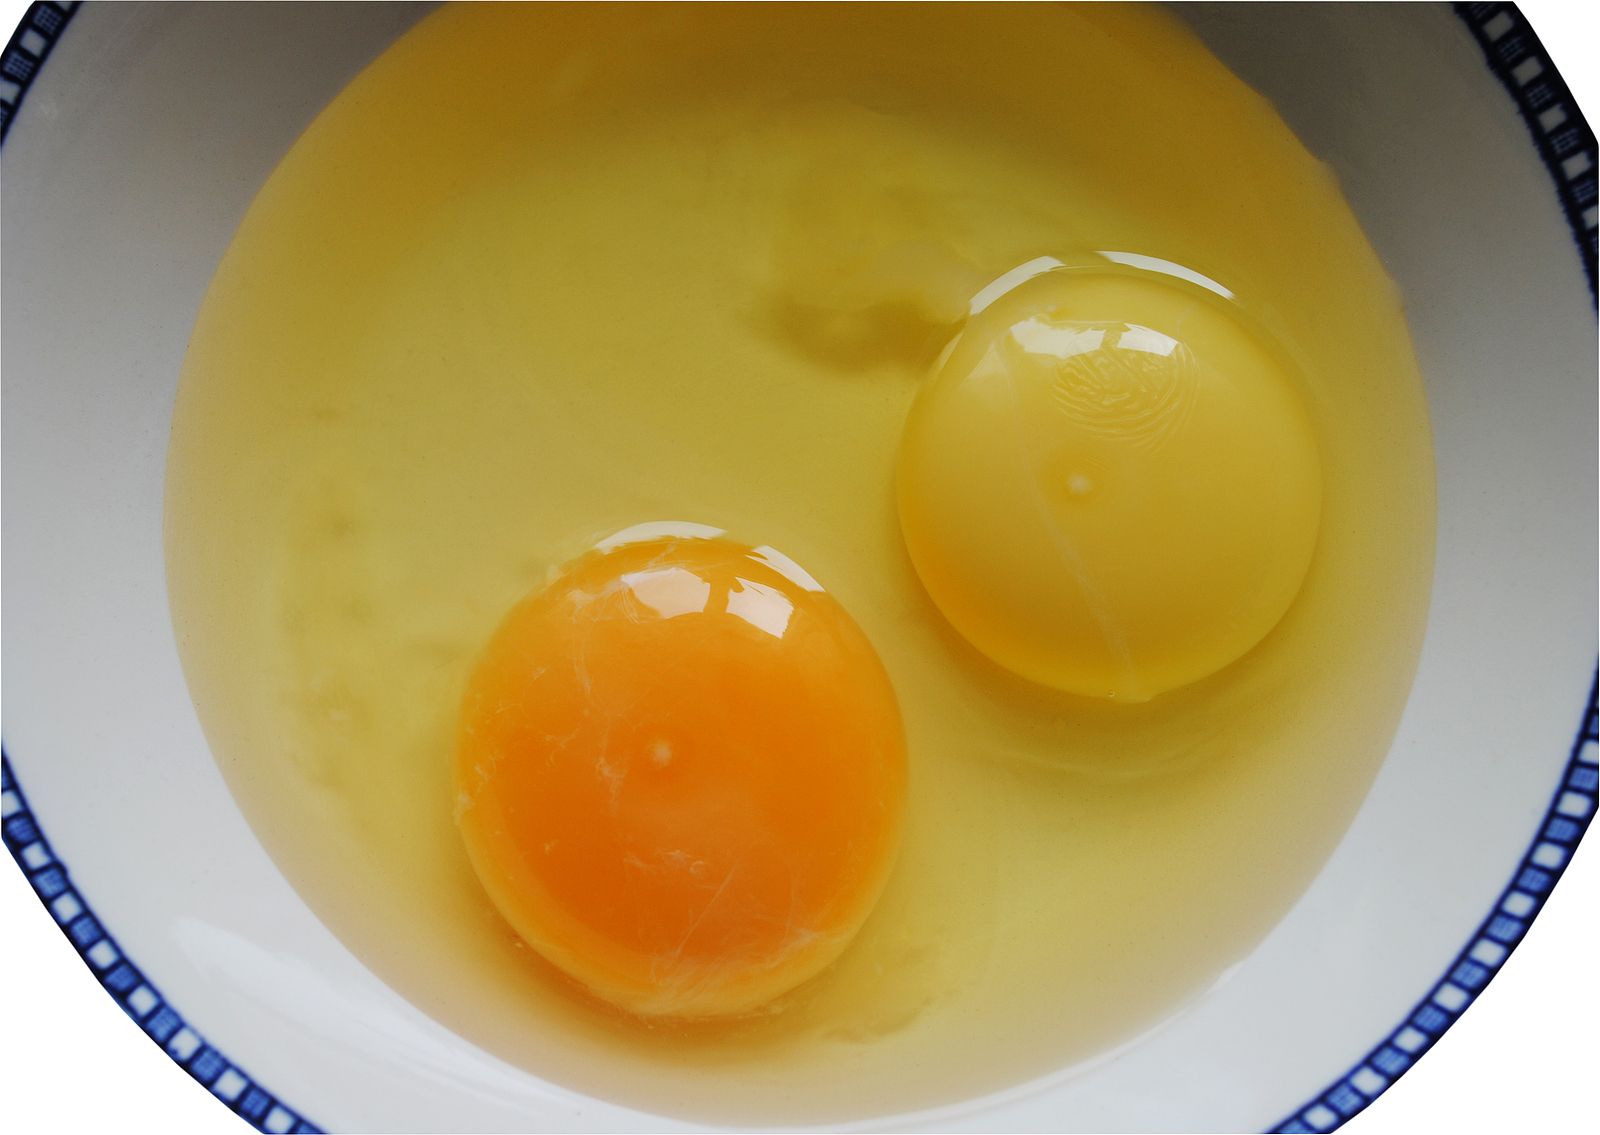 ¿Sabes por qué las yemas de los huevos tienen diferente color?